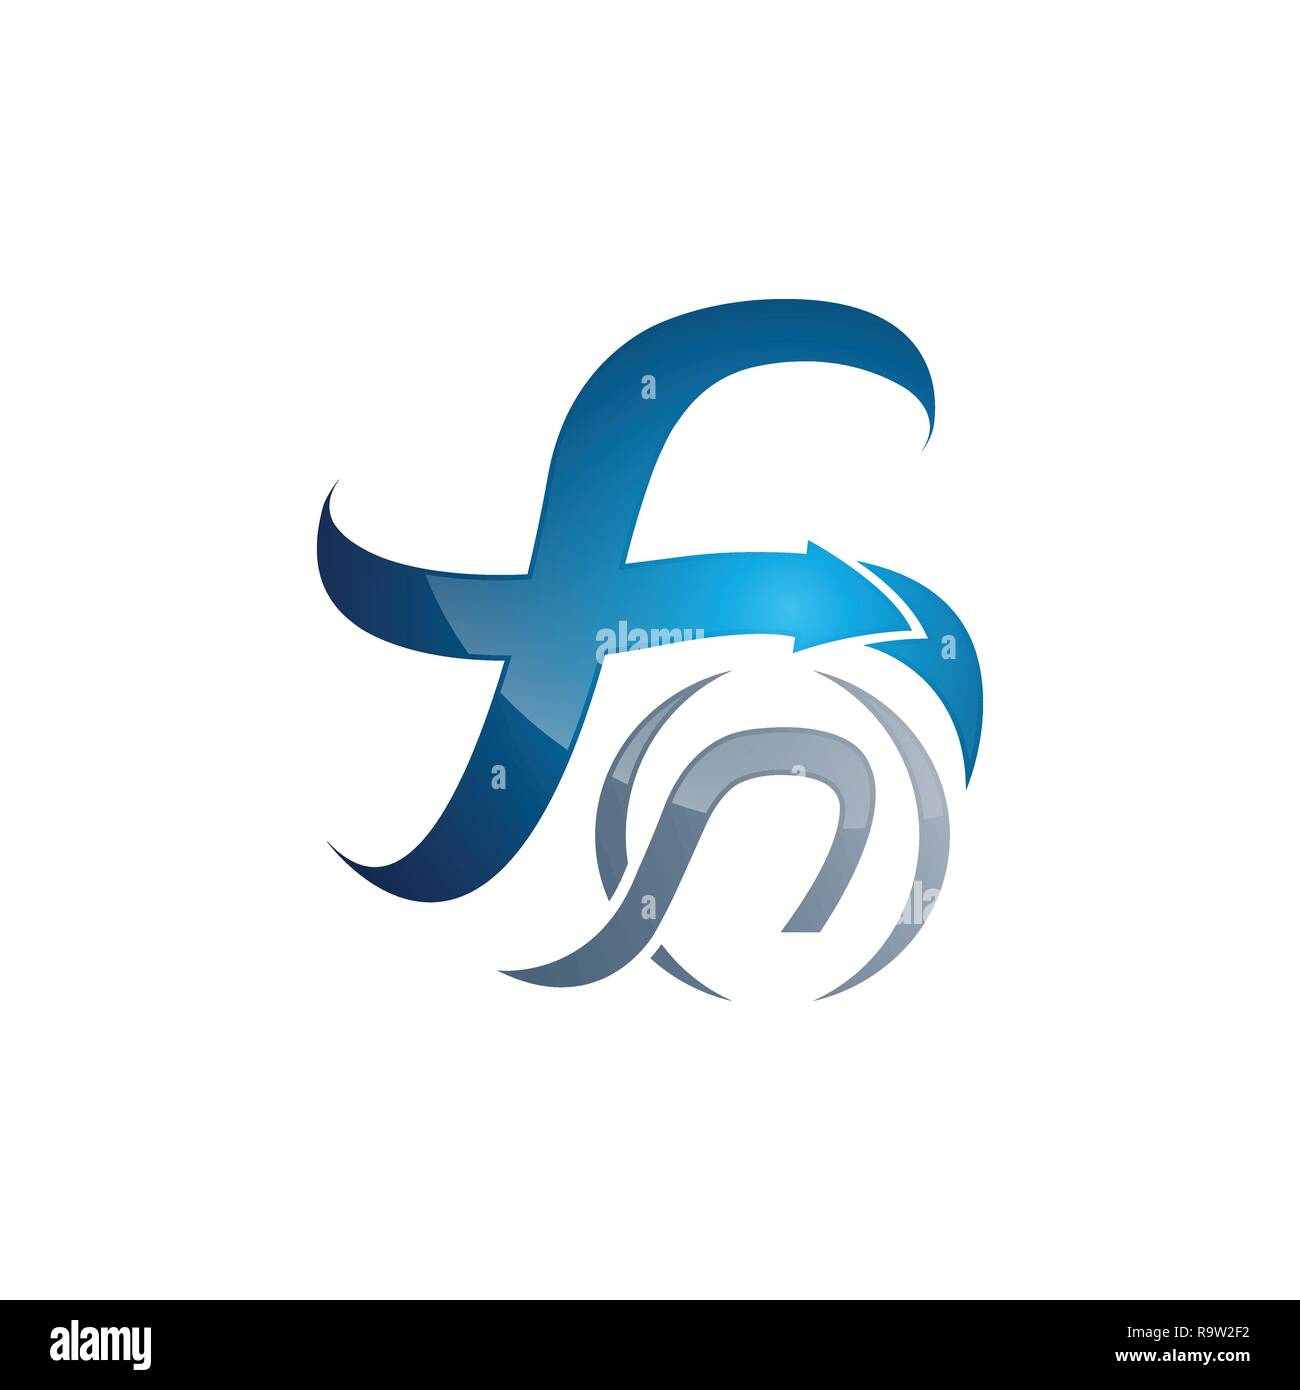 Kreatives Schreiben F Swoosh Logo template Vector Illustration, Logo für Corporate Identity der Firma der Buchstabe F, typographische Schrift Stock Vektor